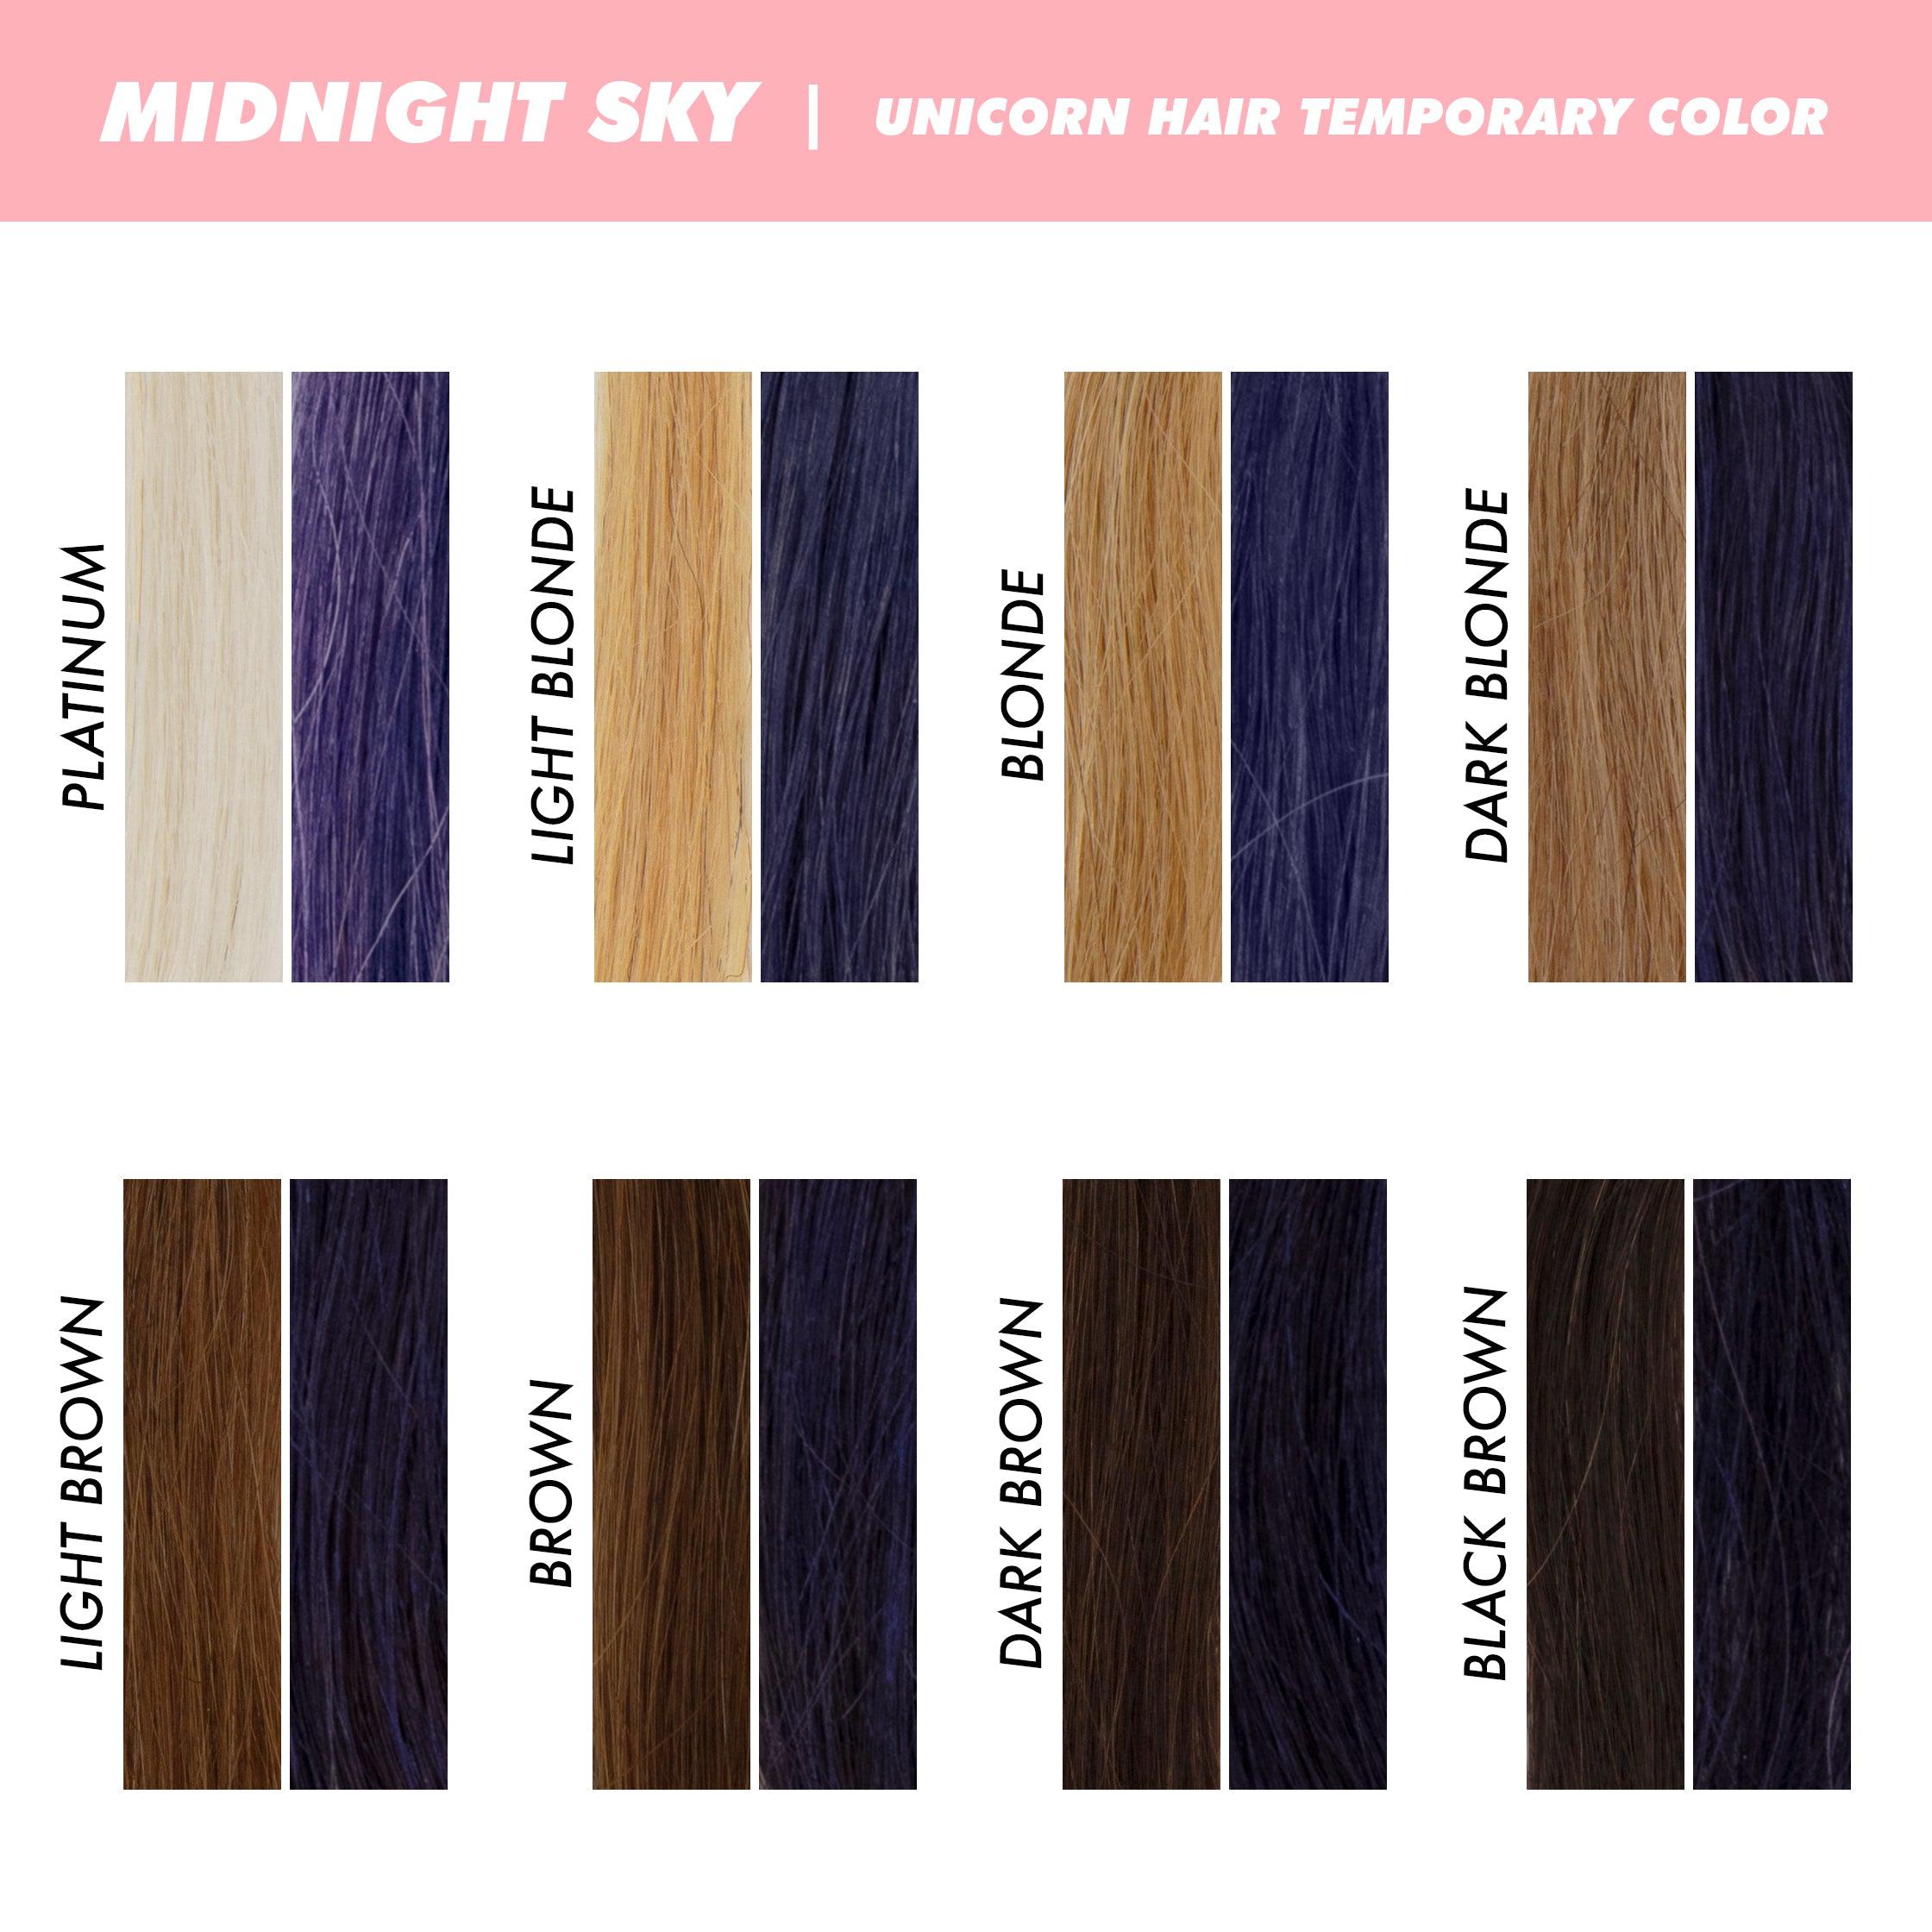 Unicorn Hair Temporary Hair Color variant:Midnight Sky